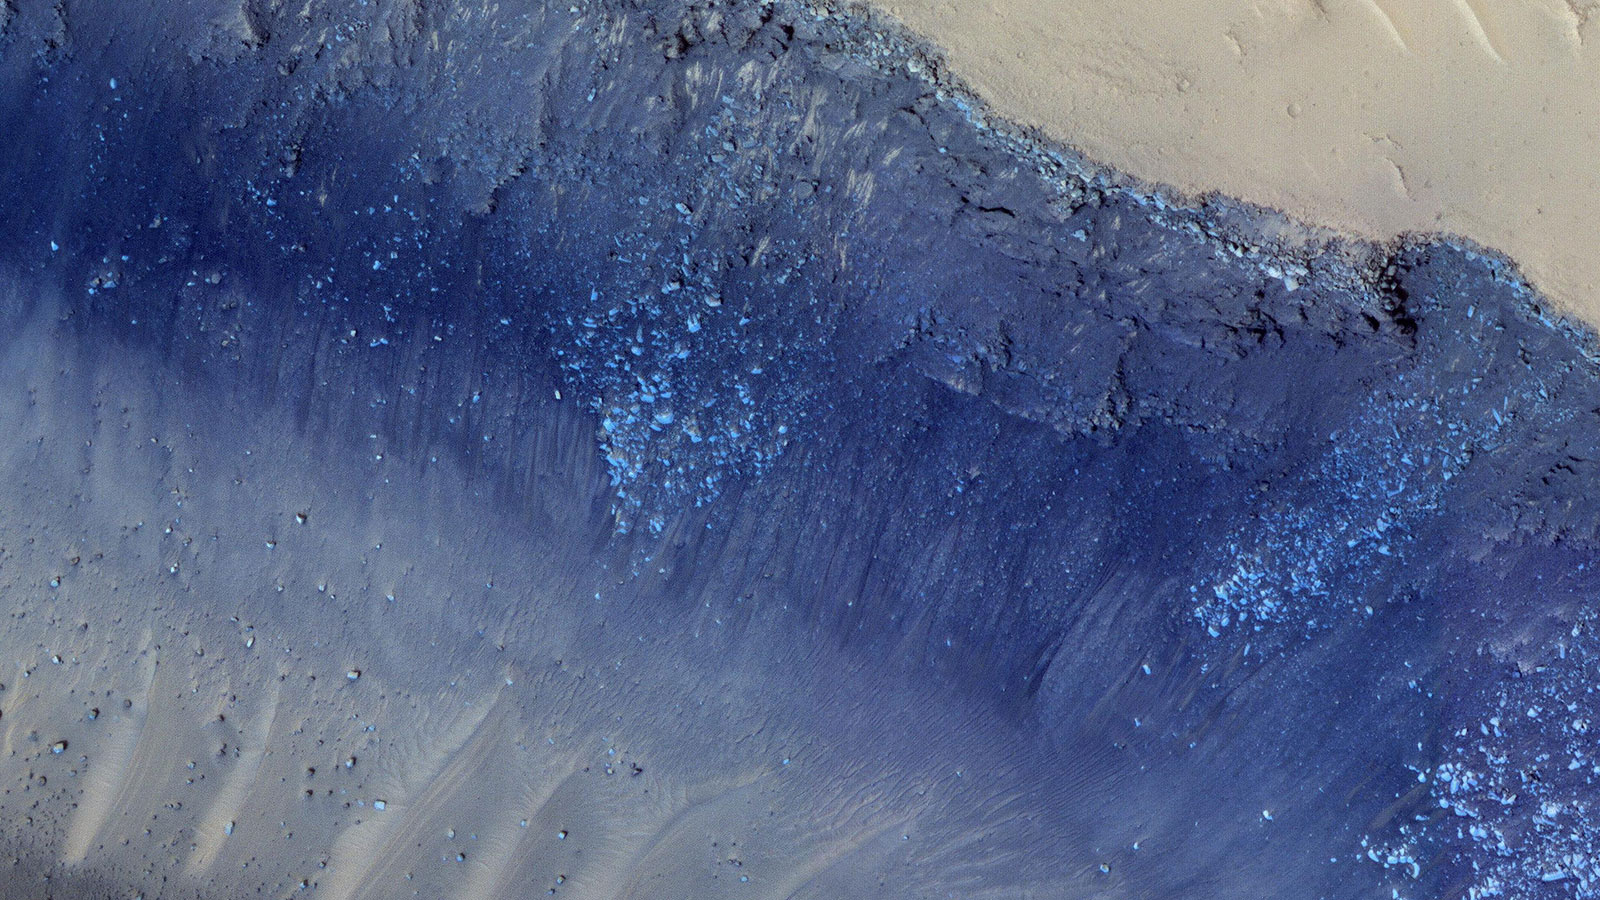 A Mars Reconnaisance Orbiter HiRISE nagy-felbontású kamerája korábban földcsuszamlásokat örökített meg a Cerberus Fossae régióban.